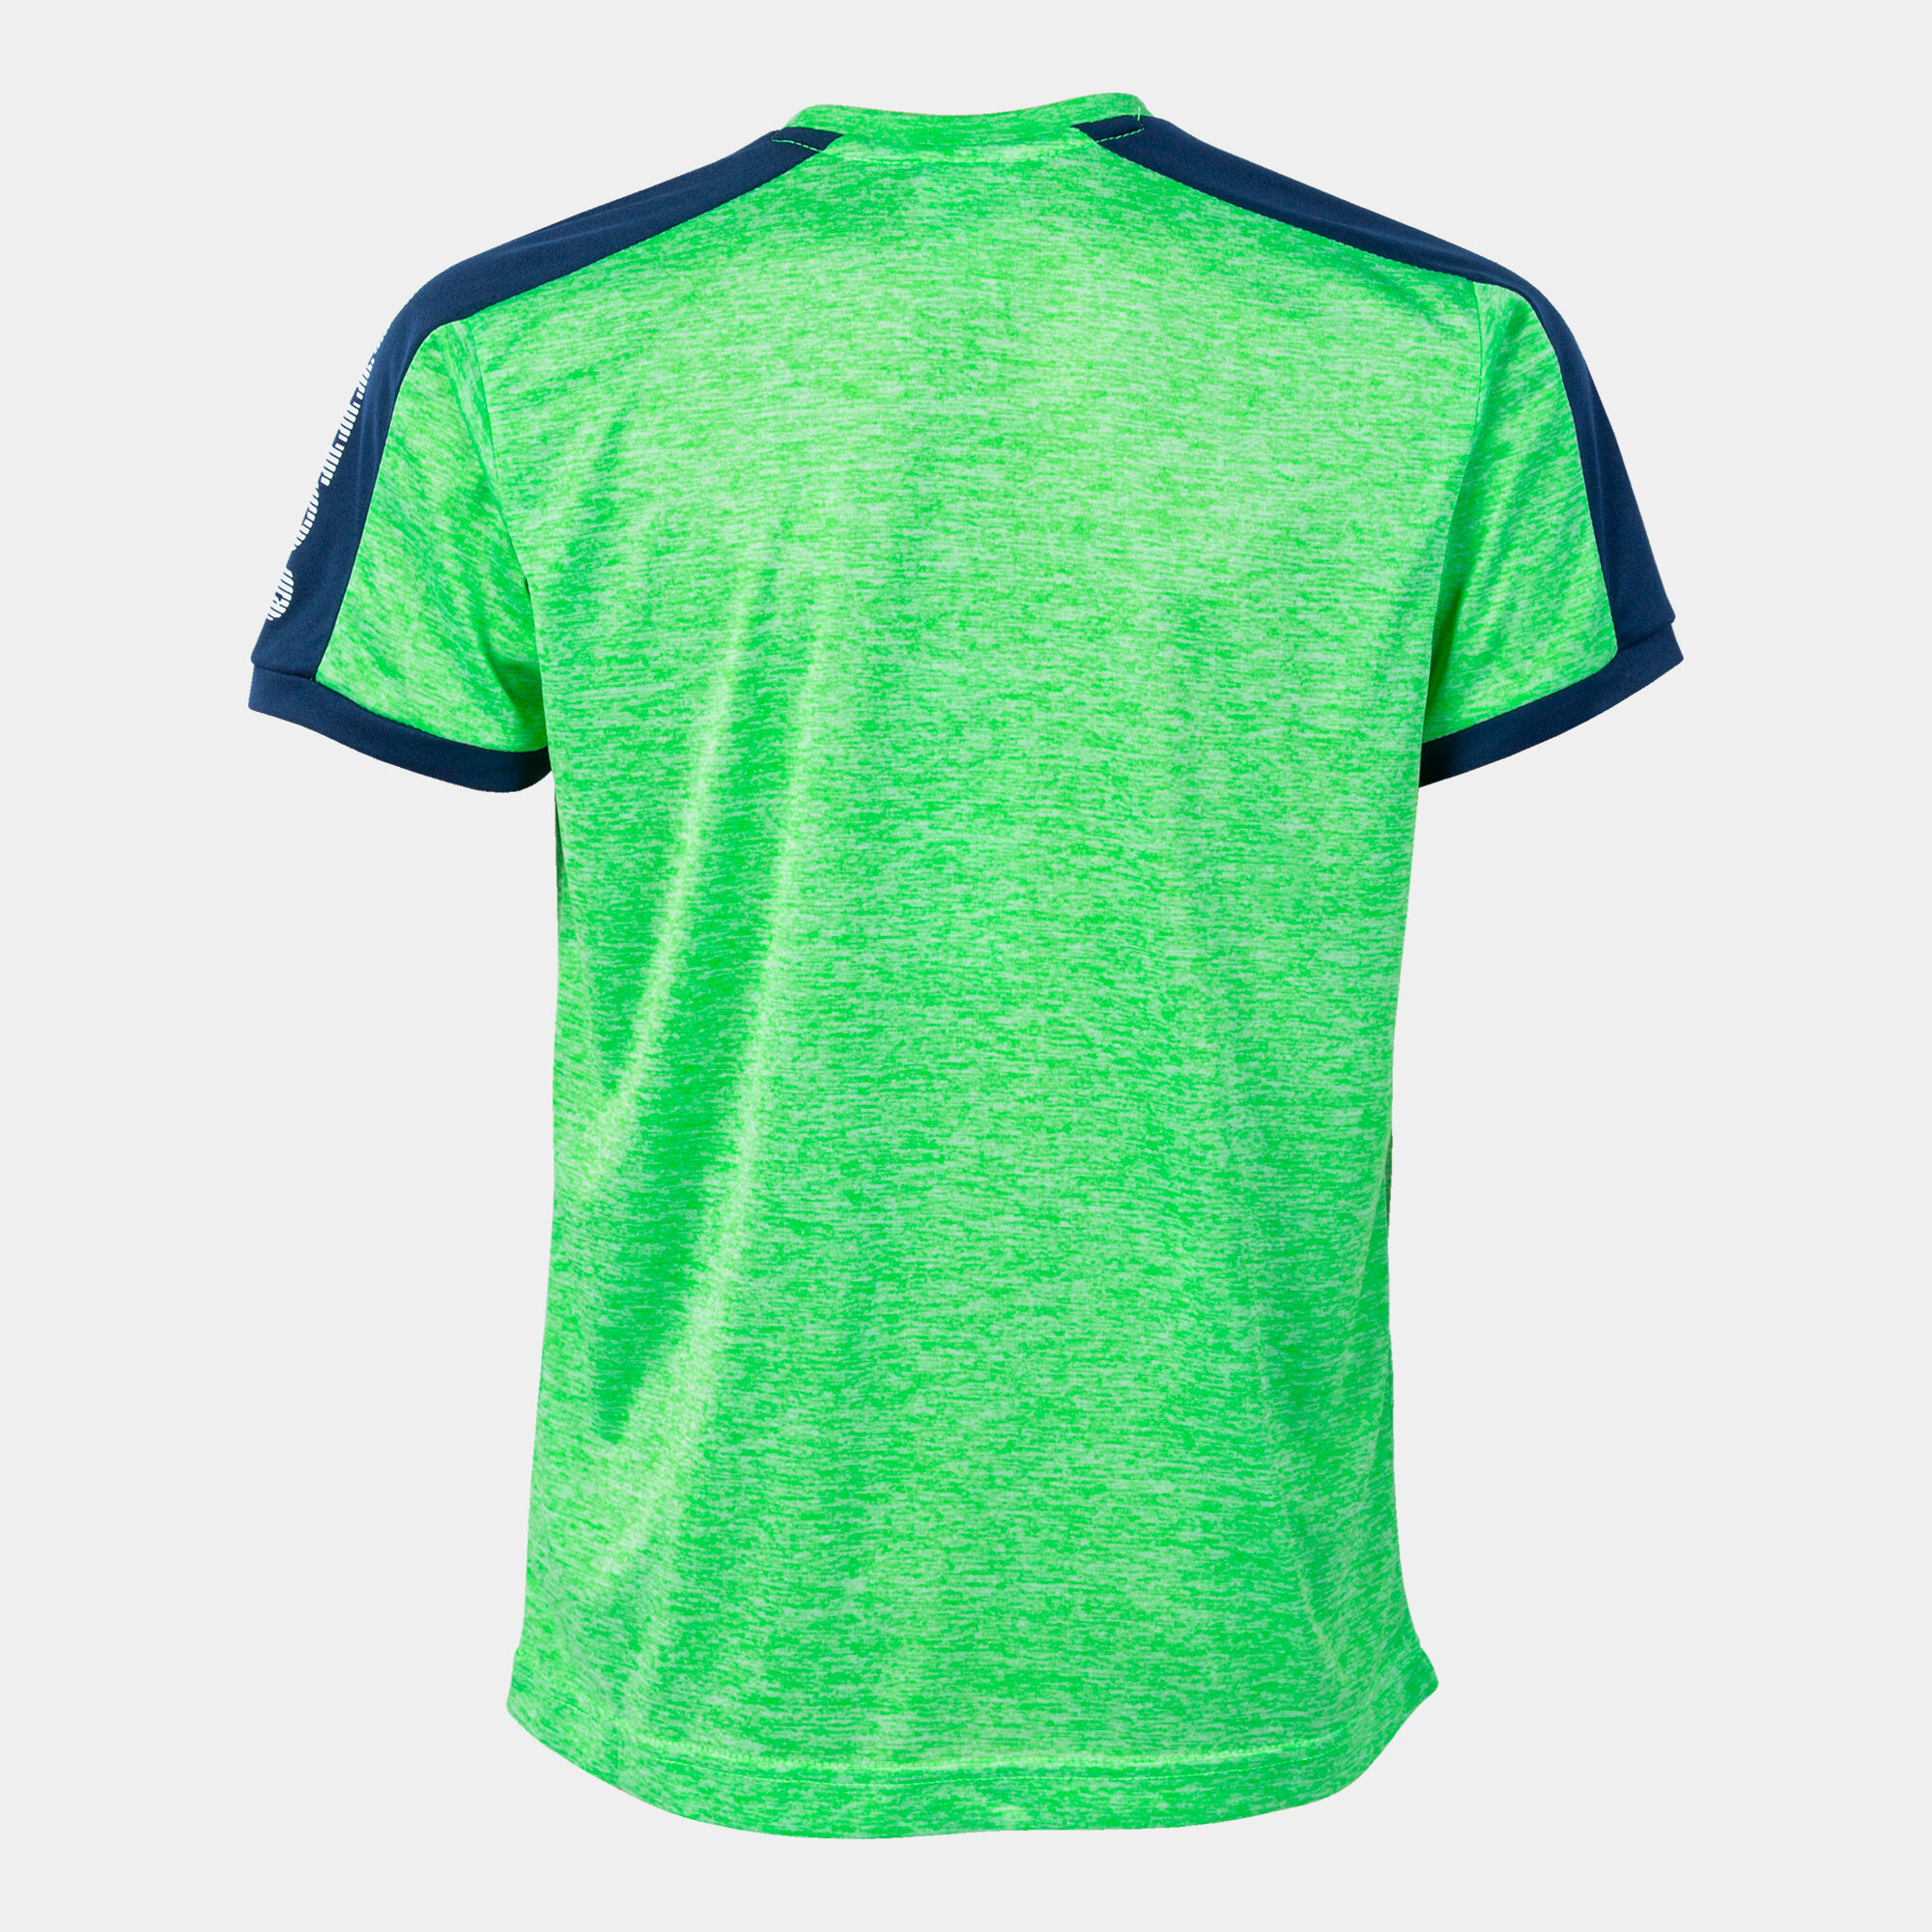 Shirt short sleeve man Escanu fluorescent green melange gray navy blue